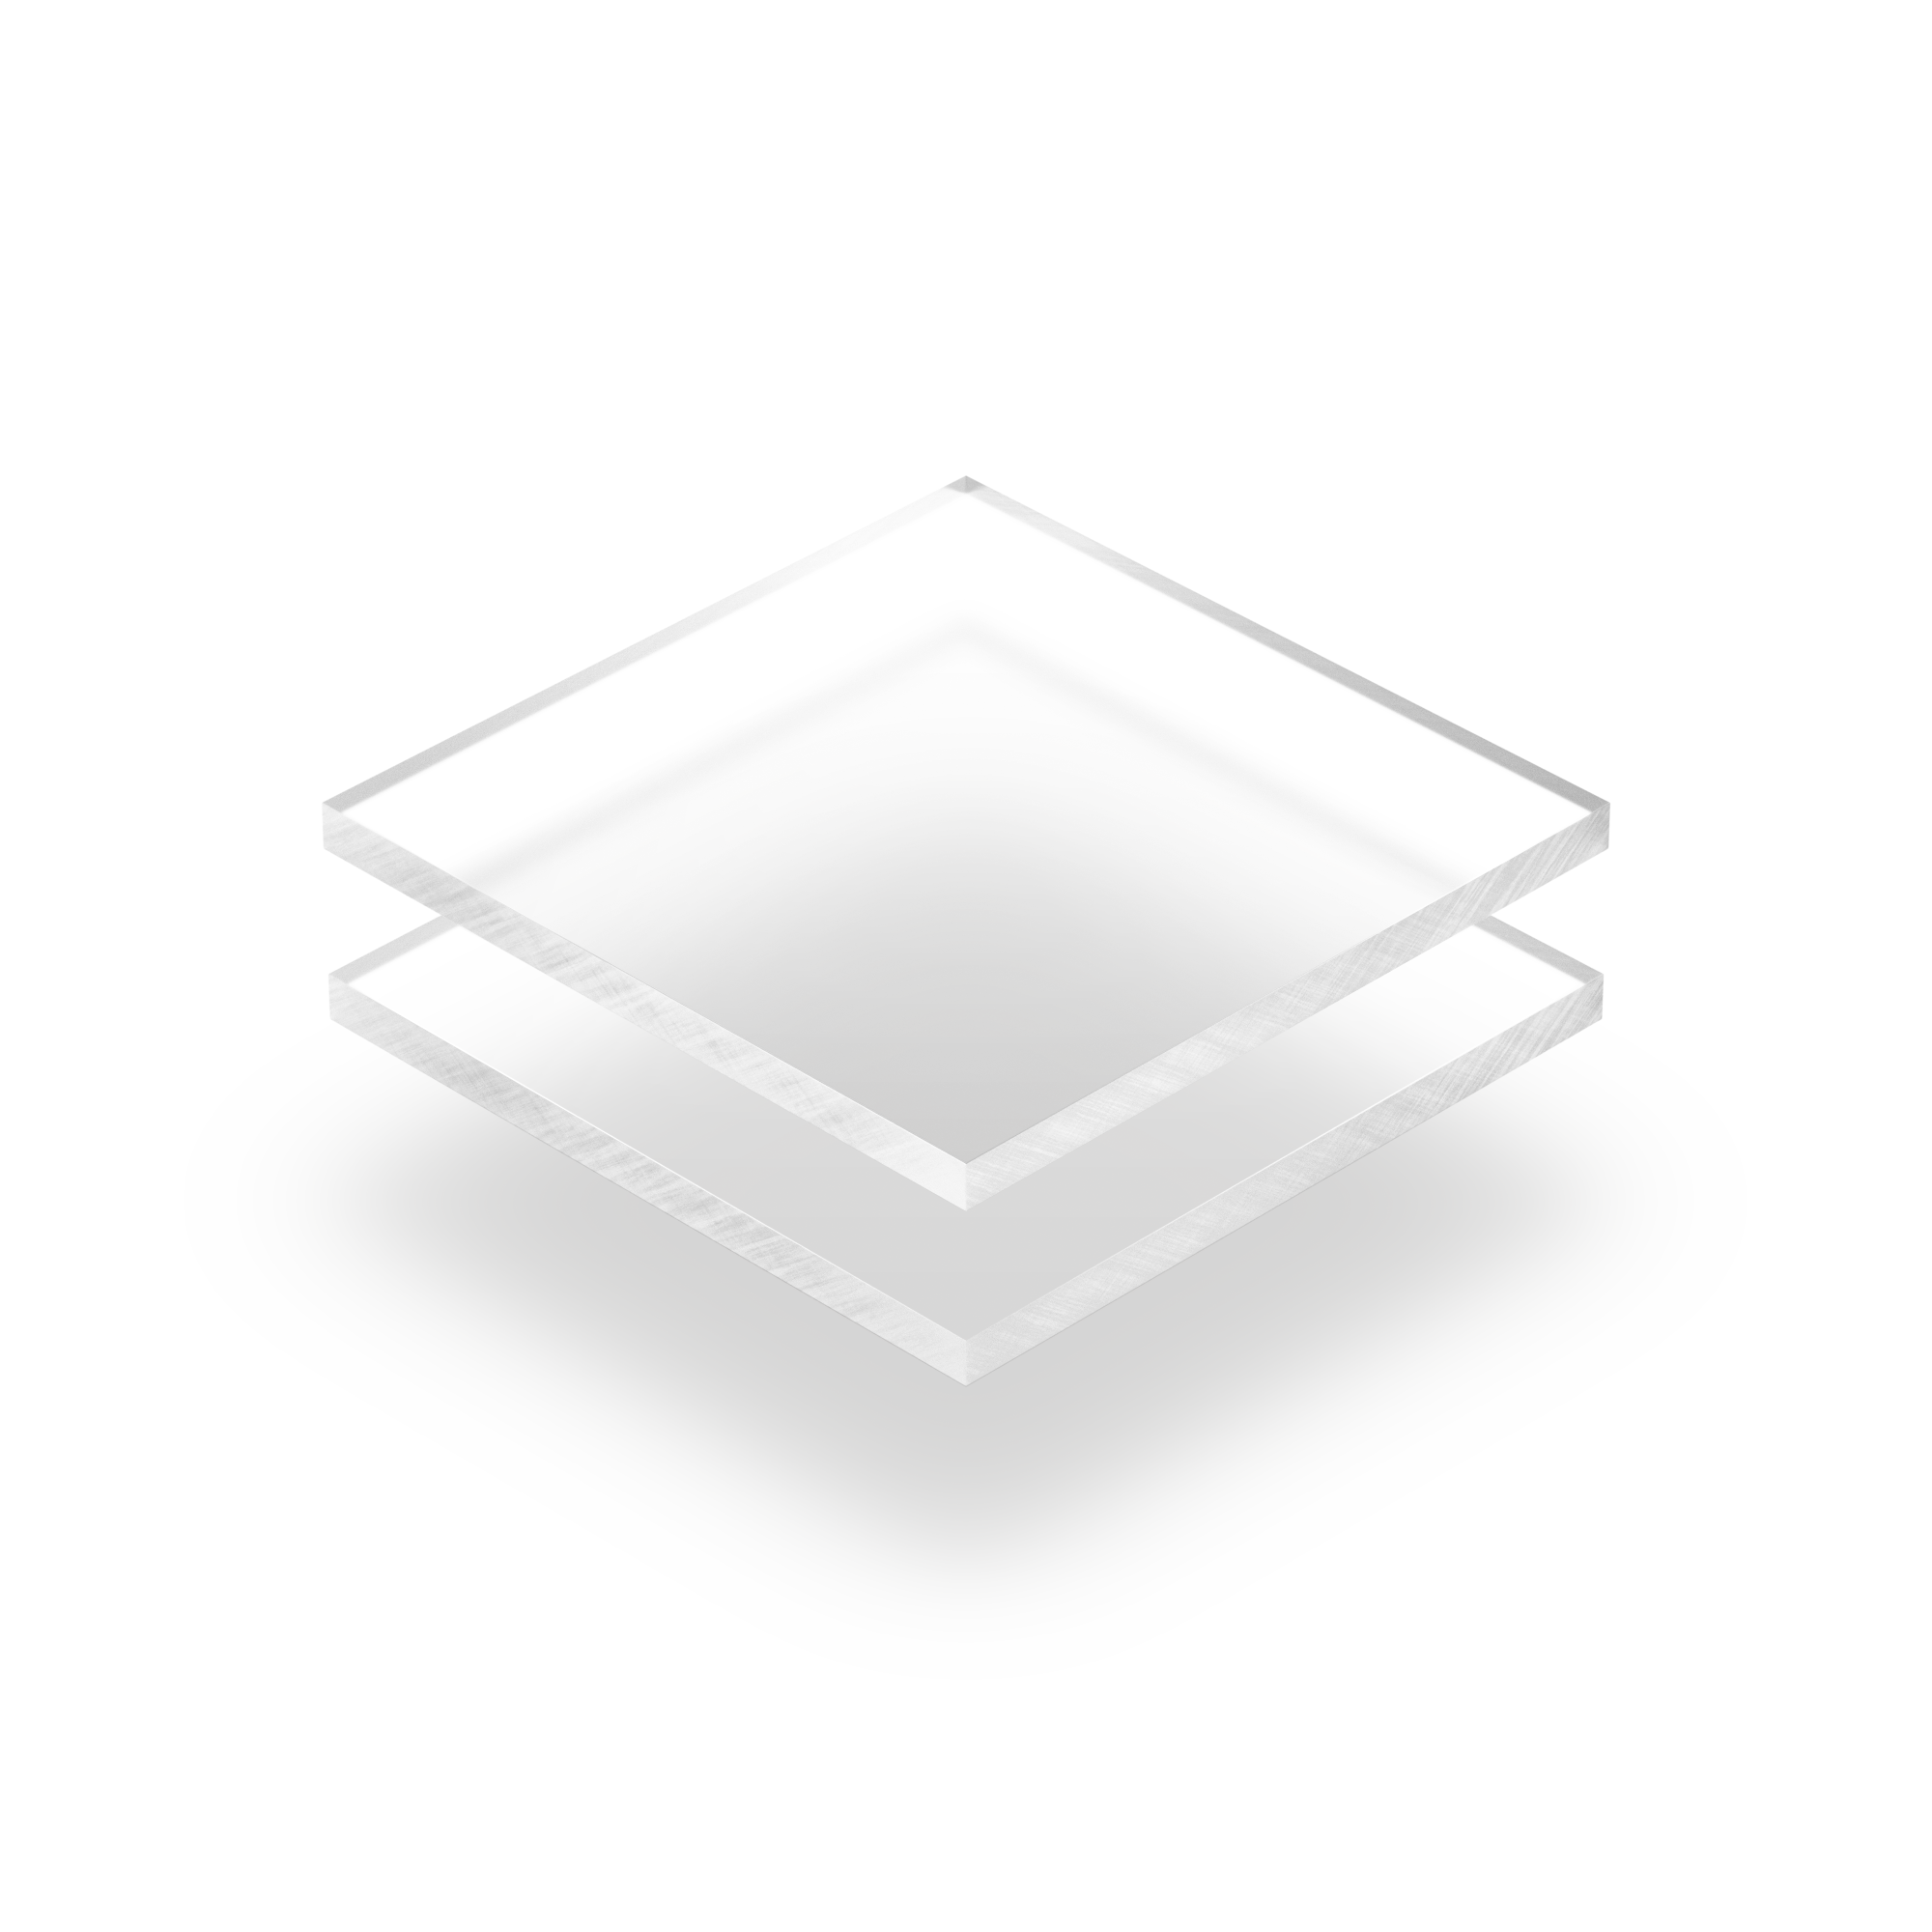 Plaque rond plexi - plaque qr code plexiglass aspect givré